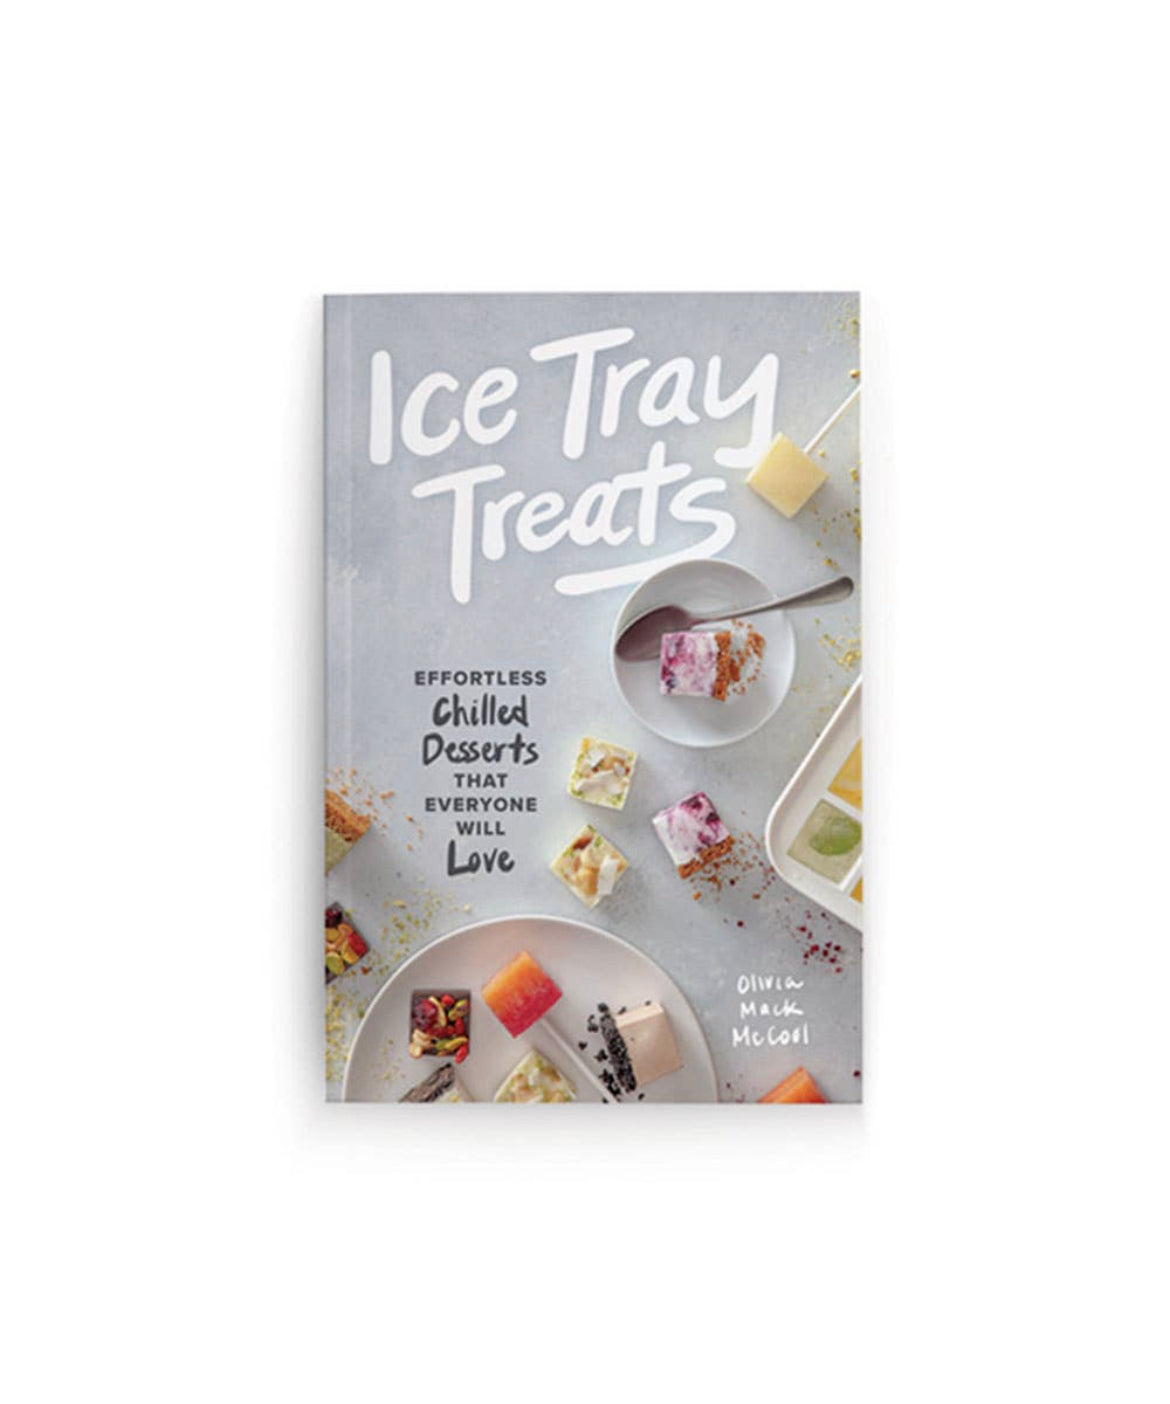 Ice tray treats